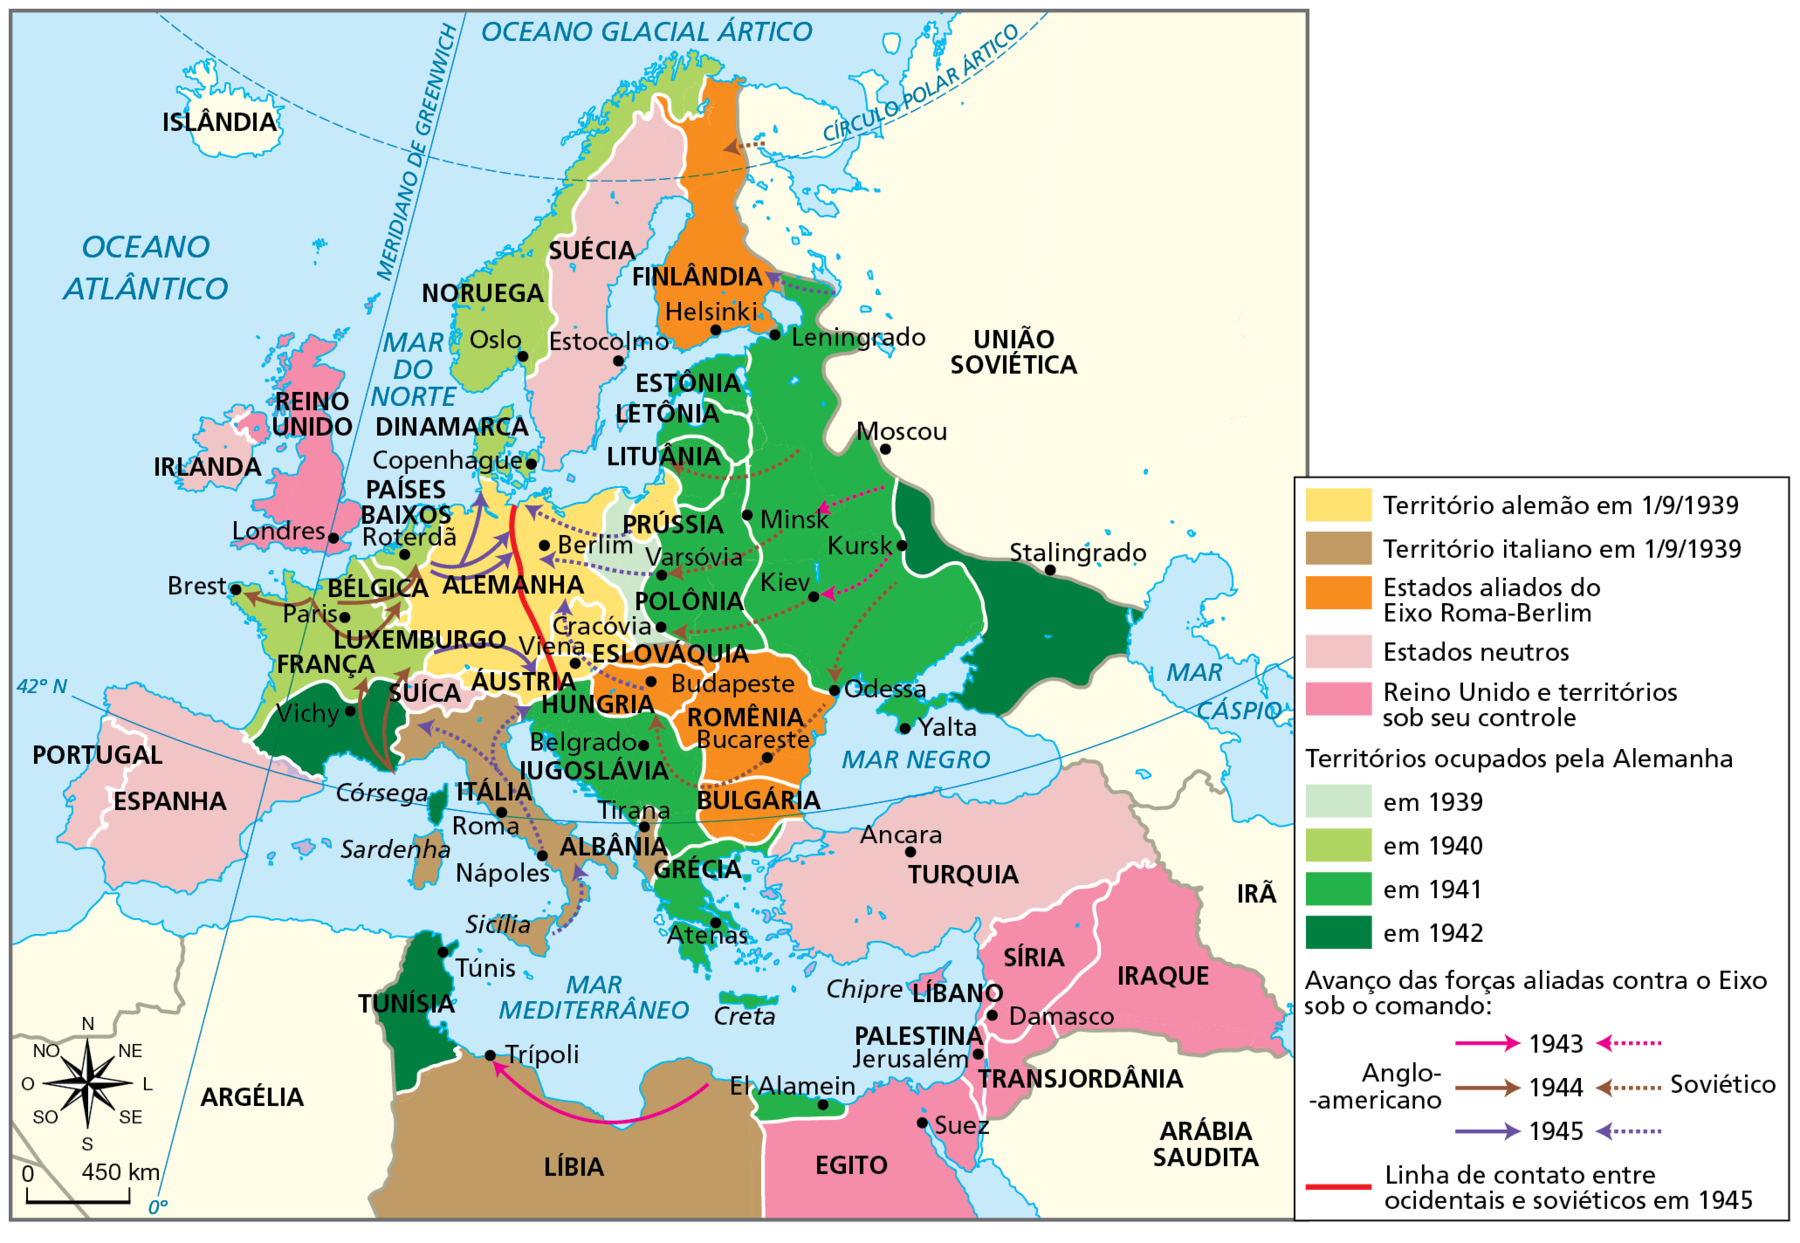 Mapa. Segunda Guerra Mundial, 1939, 1945.  Em amarelo, território alemão em 1 do 9 de 1939, compreendendo a Alemanha, a Prússia (porção descontínua do território à leste) e os territórios anexados da Áustria e parte da Eslováquia.  Em marrom claro, território italiano em 1 do 9 de 1939, compreendendo a Itália e a Albânia, no continente europeu, e a Líbia, na África.  Em laranja, Estados aliados do Eixo Roma-Berlim, compreendendo Finlândia, Eslováquia, Romênia, Hungria e Bulgária.  Em rosa claro, Estados neutros, compreendendo Portugal, Espanha, Suíça, Irlanda, Suécia e Turquia. Em rosa, Reino Unido e territórios sob controle britânico, compreendendo o Reino Unido, na Europa; o Egito, na África; e Palestina, Transjordânia, Líbano, Síria e Iraque, no Oriente Médio.  Em verde bem claro, territórios ocupados pela Alemanha em 1939, compreendendo parte da Polônia.  Em verde claro, territórios ocupados pela Alemanha em 1940, compreendendo Noruega, Dinamarca, Países Baixos, Bélgica e a maior parte da França.  Em verde vivo, territórios ocupados pela Alemanha em 1941, compreendendo Grécia, Iugoslávia, Polônia, Lituânia, Letônia, Estônia e parte do oeste da União Soviética, aproximando-se da cidade de Moscou.  Em verde escuro, territórios ocupados pela Alemanha em 1942, compreendendo o sul da França, na Europa; a Tunísia, na África; e parte da União Soviética à leste da área conquistada em 1941, aproximando-se da cidade de Stalingrado. Uma seta rosa contínua indica o avanço das forças aliadas contra o Eixo sob o comando anglo-americano em 1943 que vai da porção leste no norte da Líbia a Trípoli, cidade na porção norte-oeste da Líbia.  Uma seta rosa tracejada indica o avanço das forças aliadas sob o comando soviético; ela vai da União Soviética em direção a oeste no continente europeu. Uma seta marrom contínua indica o avanço das forças aliadas contra o Eixo sob o comando anglo-americano em 1944; ela vai do sul da França em direção ao norte, e da França em direção a Bélgica e Países Baixos.  Uma seta marrom descontínua indica a direção do avanço das forças aliadas contra o Eixo sob o comando soviético; ela vai da União Soviética em direção a Cracóvia e Varsóvia na Polônia.   Uma seta lilás contínua indica a direção do avanço das forças aliadas contra o Eixo sob o comando anglo-americano em 1945, ela vai dos Países Baixos em direção ao norte da Alemanha e do sudeste da França em direção à Áustria.  Uma seta lilás descontínua indica a direção do avanço das forças aliadas contra o Eixo sob o comando soviético em 1945; ela vai da Prússia em direção ao norte da Alemanha, de Varsóvia, na Polônia, em direção à Alemanha, de Budapeste, na Hungria, em direção à Alemanha, da Sicília em direção ao sul da Itália e de Nápoles em direção ao norte da Ioguslávia e sul da França.  Uma linha vermelha representa a linha de contato entre ocidentais e soviéticos em 1945. Ela atravessa a Alemanha no sentido norte-sul. No mapa, localiza-se a cidade de Vichy, no sul da França, como parte do território ocupado pela Alemanha em 1942.  No canto inferior esquerdo, rosa dos ventos e escala de 0 a 450 quilômetros.